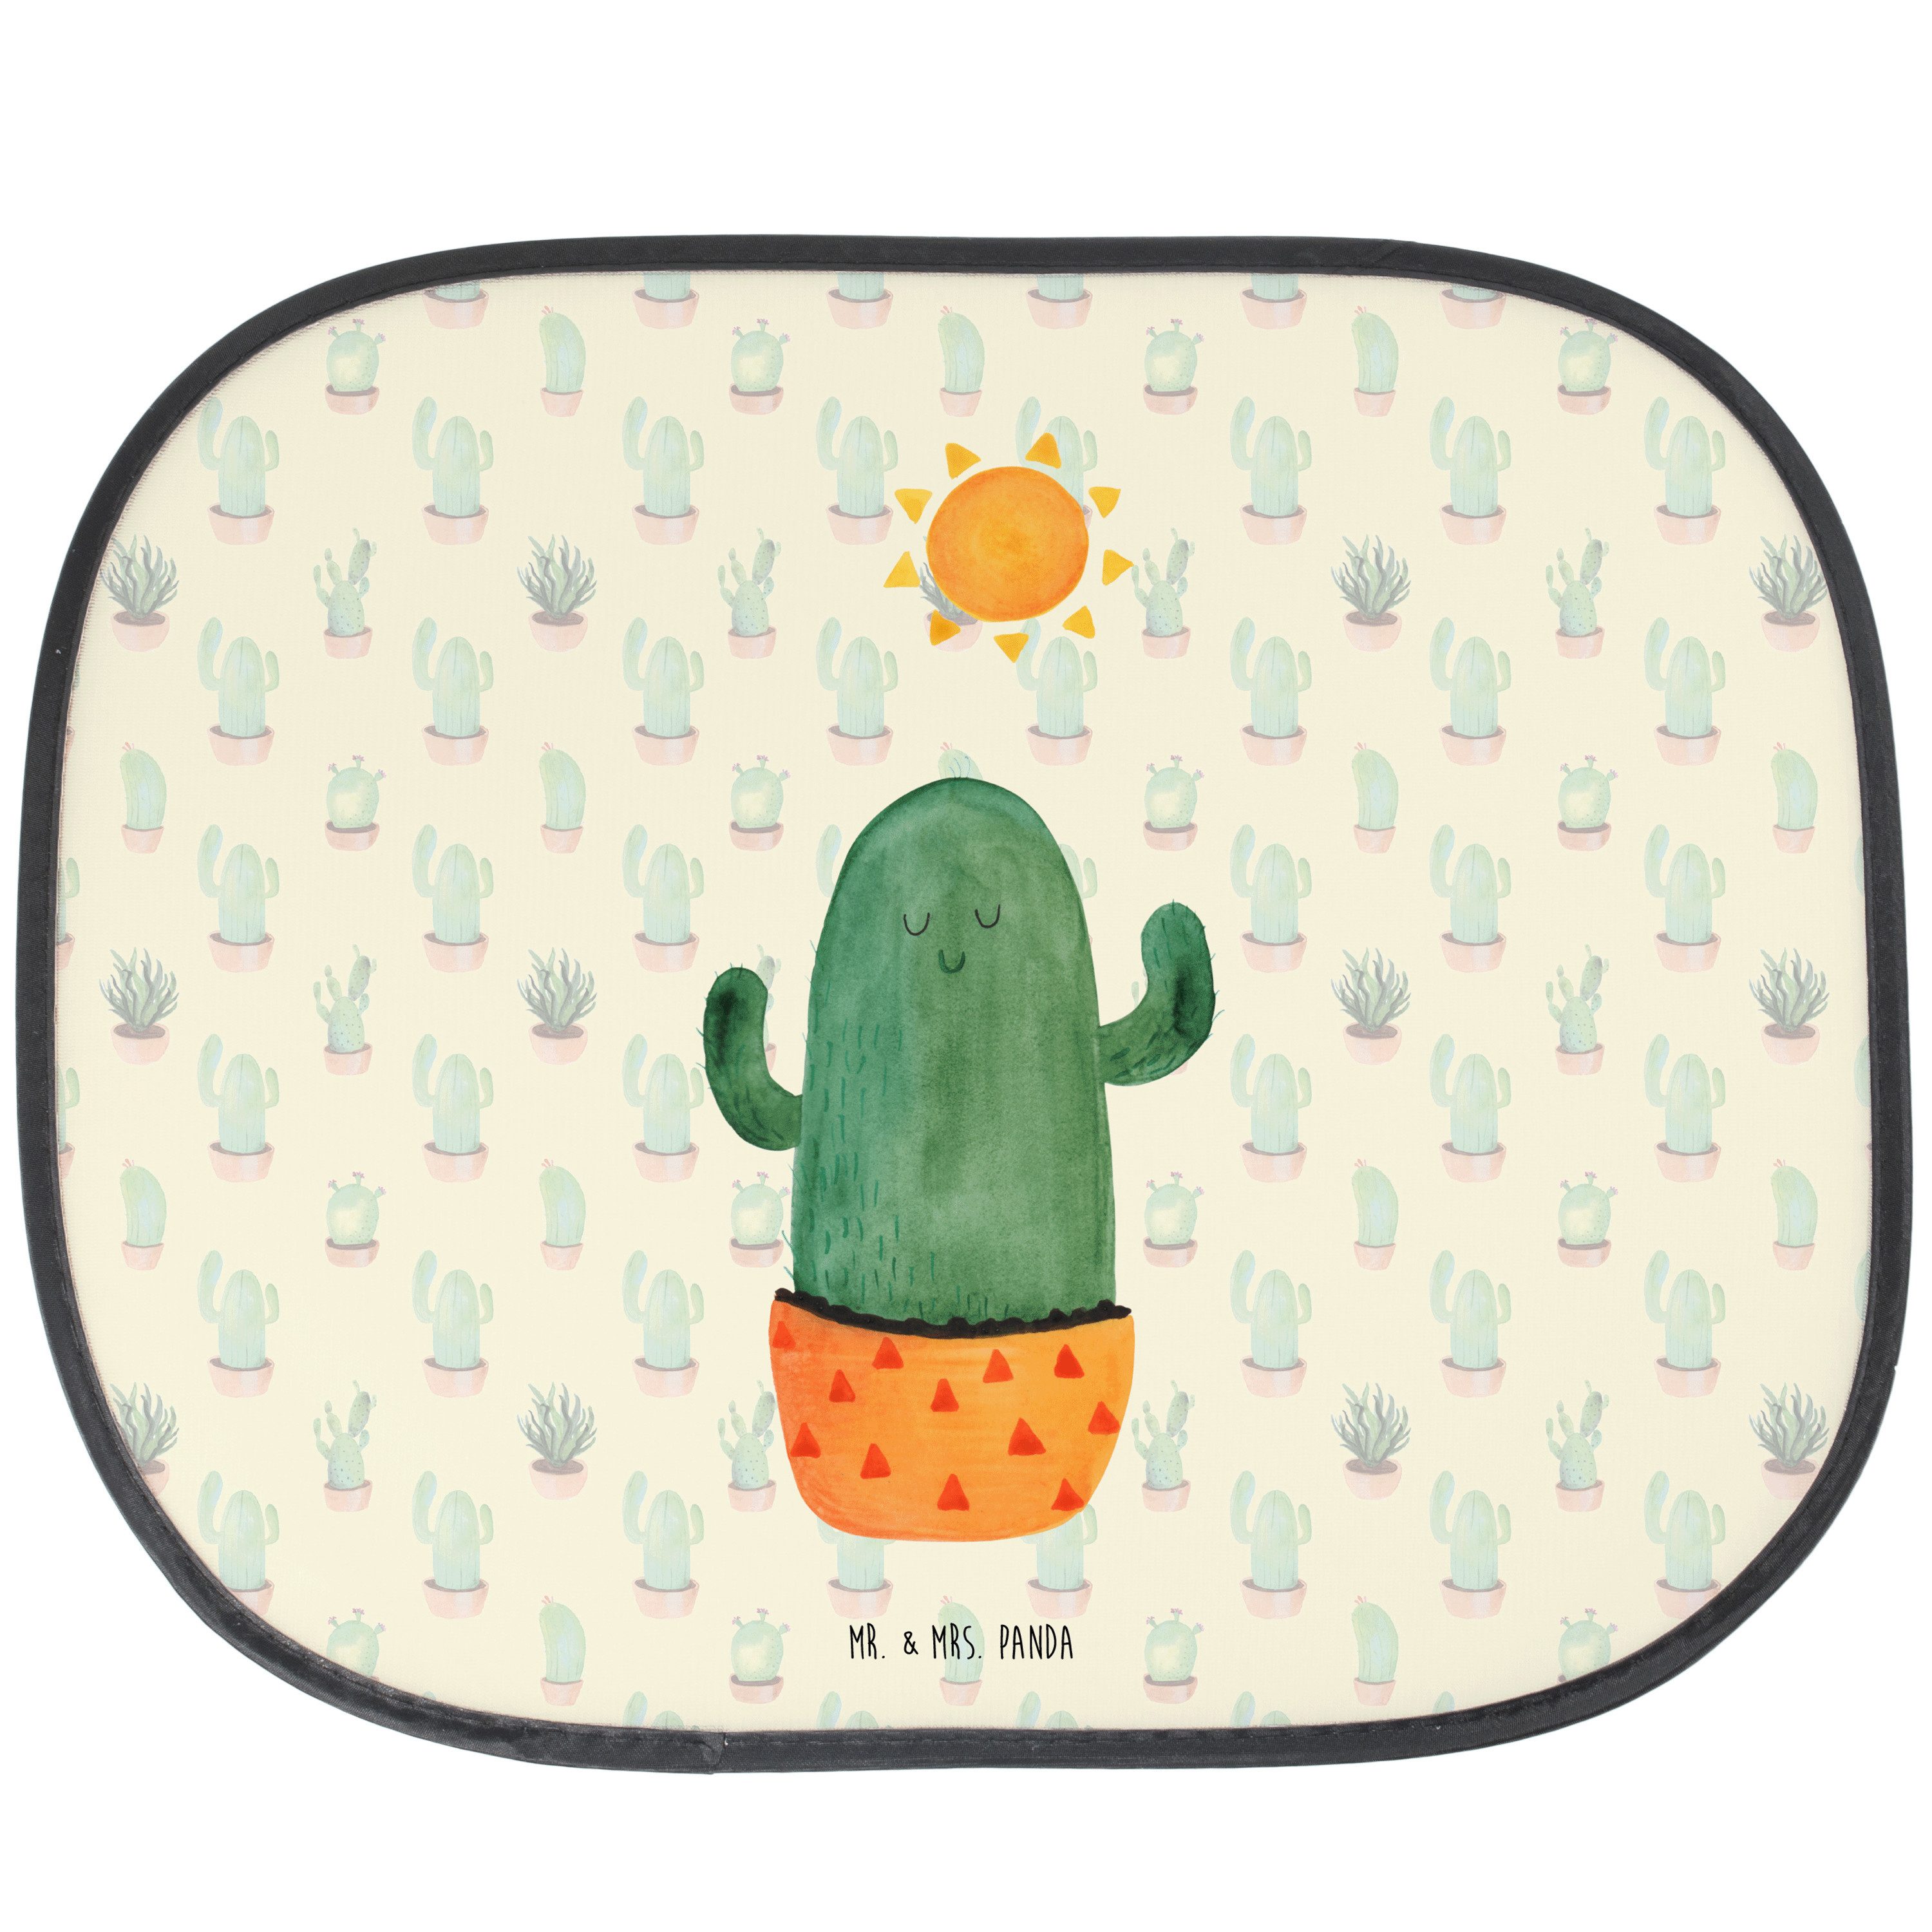 Sonnenschutz Kaktus Sonne - Kaktus Grün - Geschenk, Sonnenblende, glücklich, Kakte, Mr. & Mrs. Panda, Seidenmatt, Einzigartige Motive